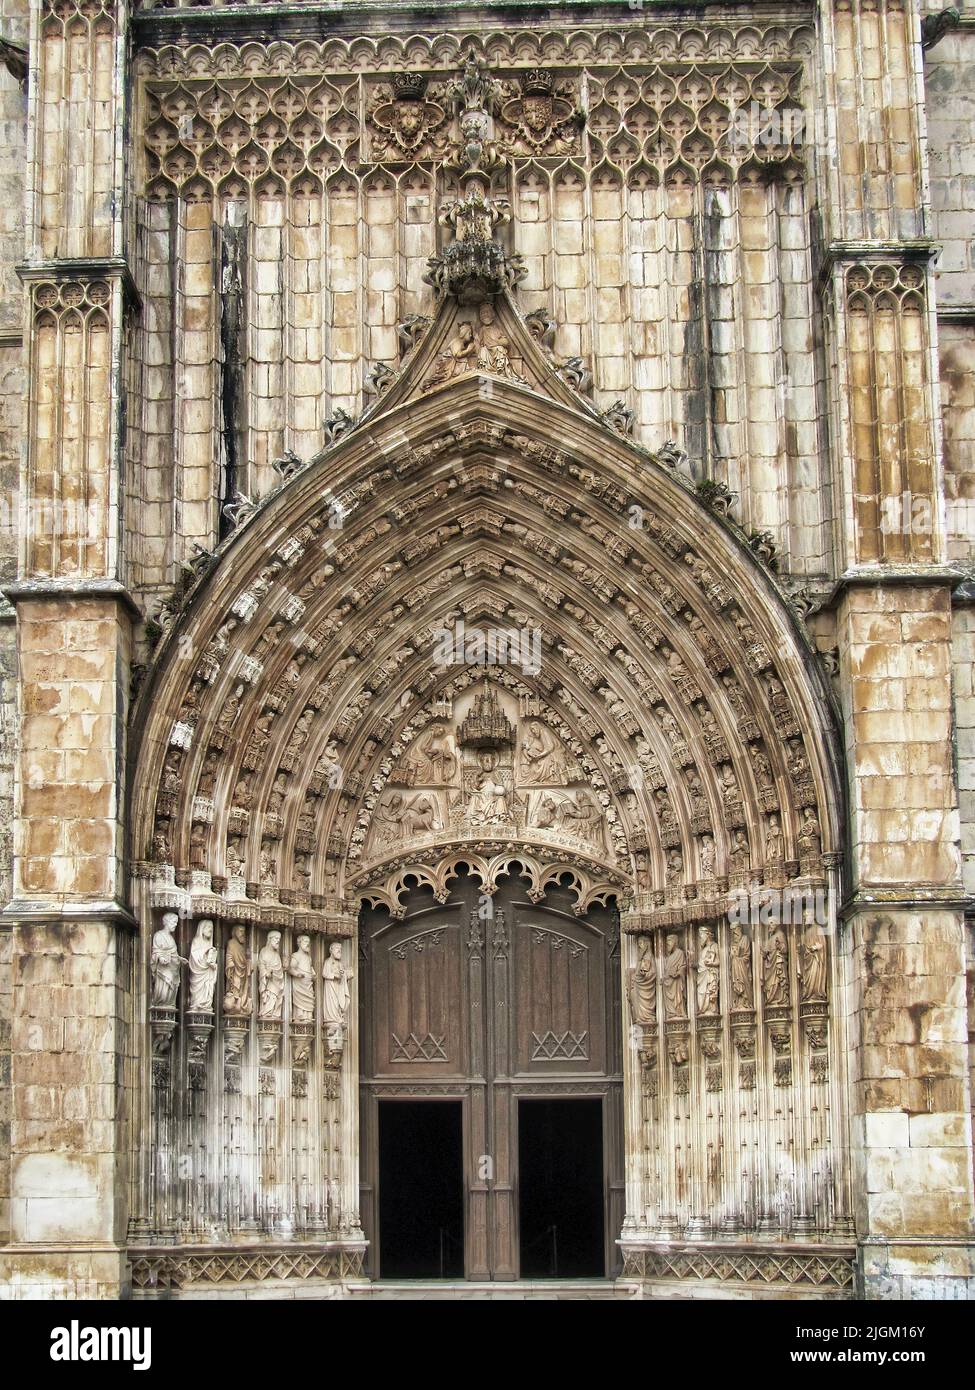 Il bellissimo monastero di Batalha si trova in Portogallo nella città di Batalha e costruito in stile gotico con parti in stile manuelino. Foto Stock